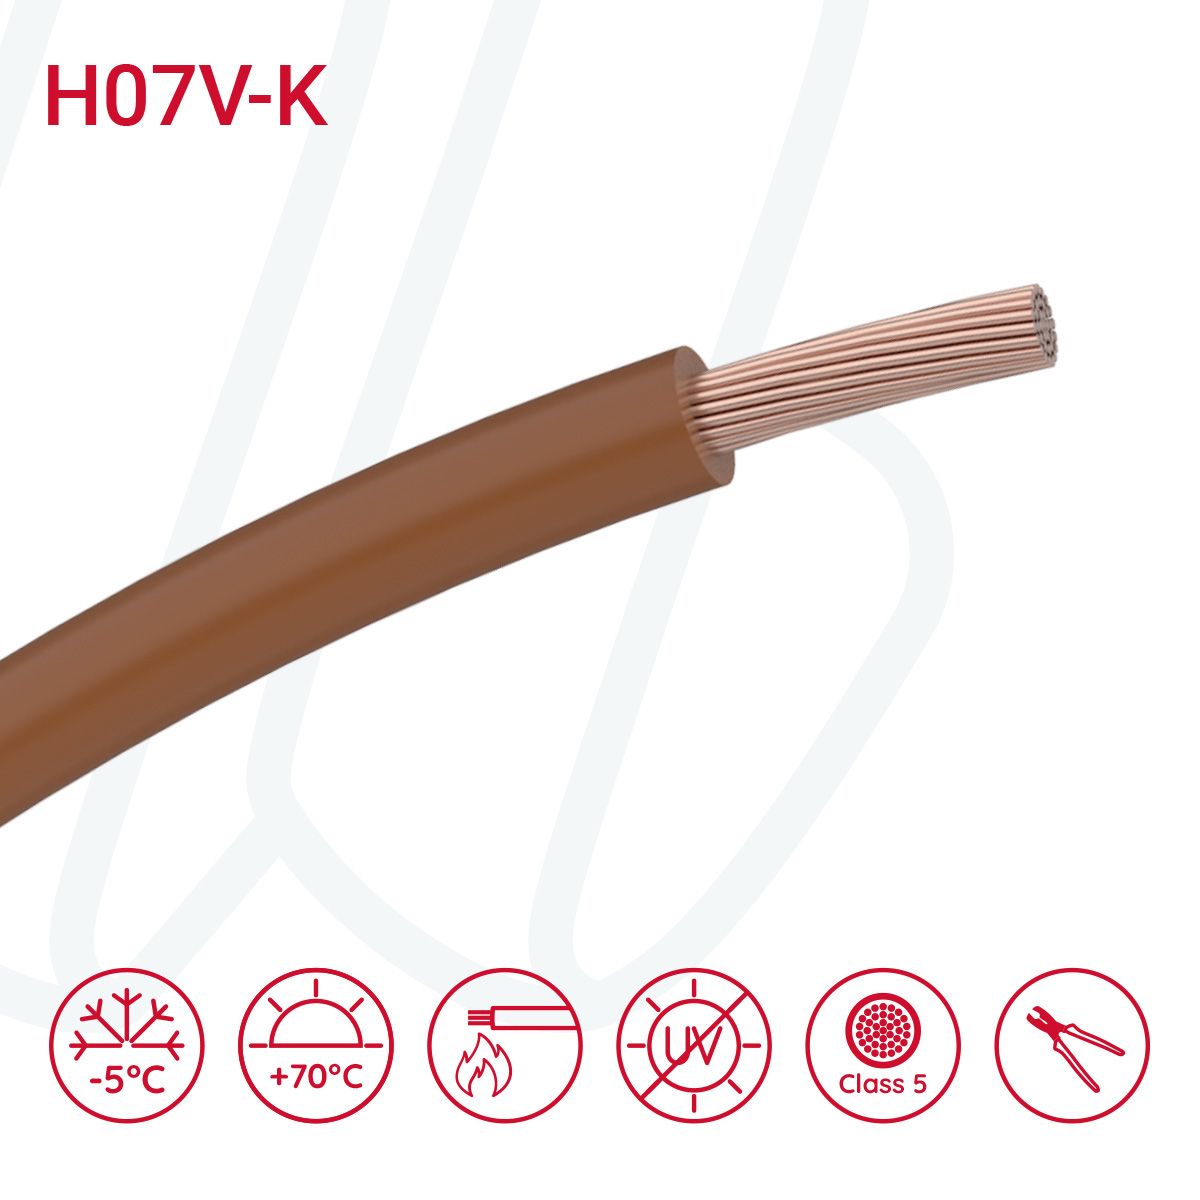 Провід монтажний гнучкий H07V-K 16 мм² коричневий, 01, 16